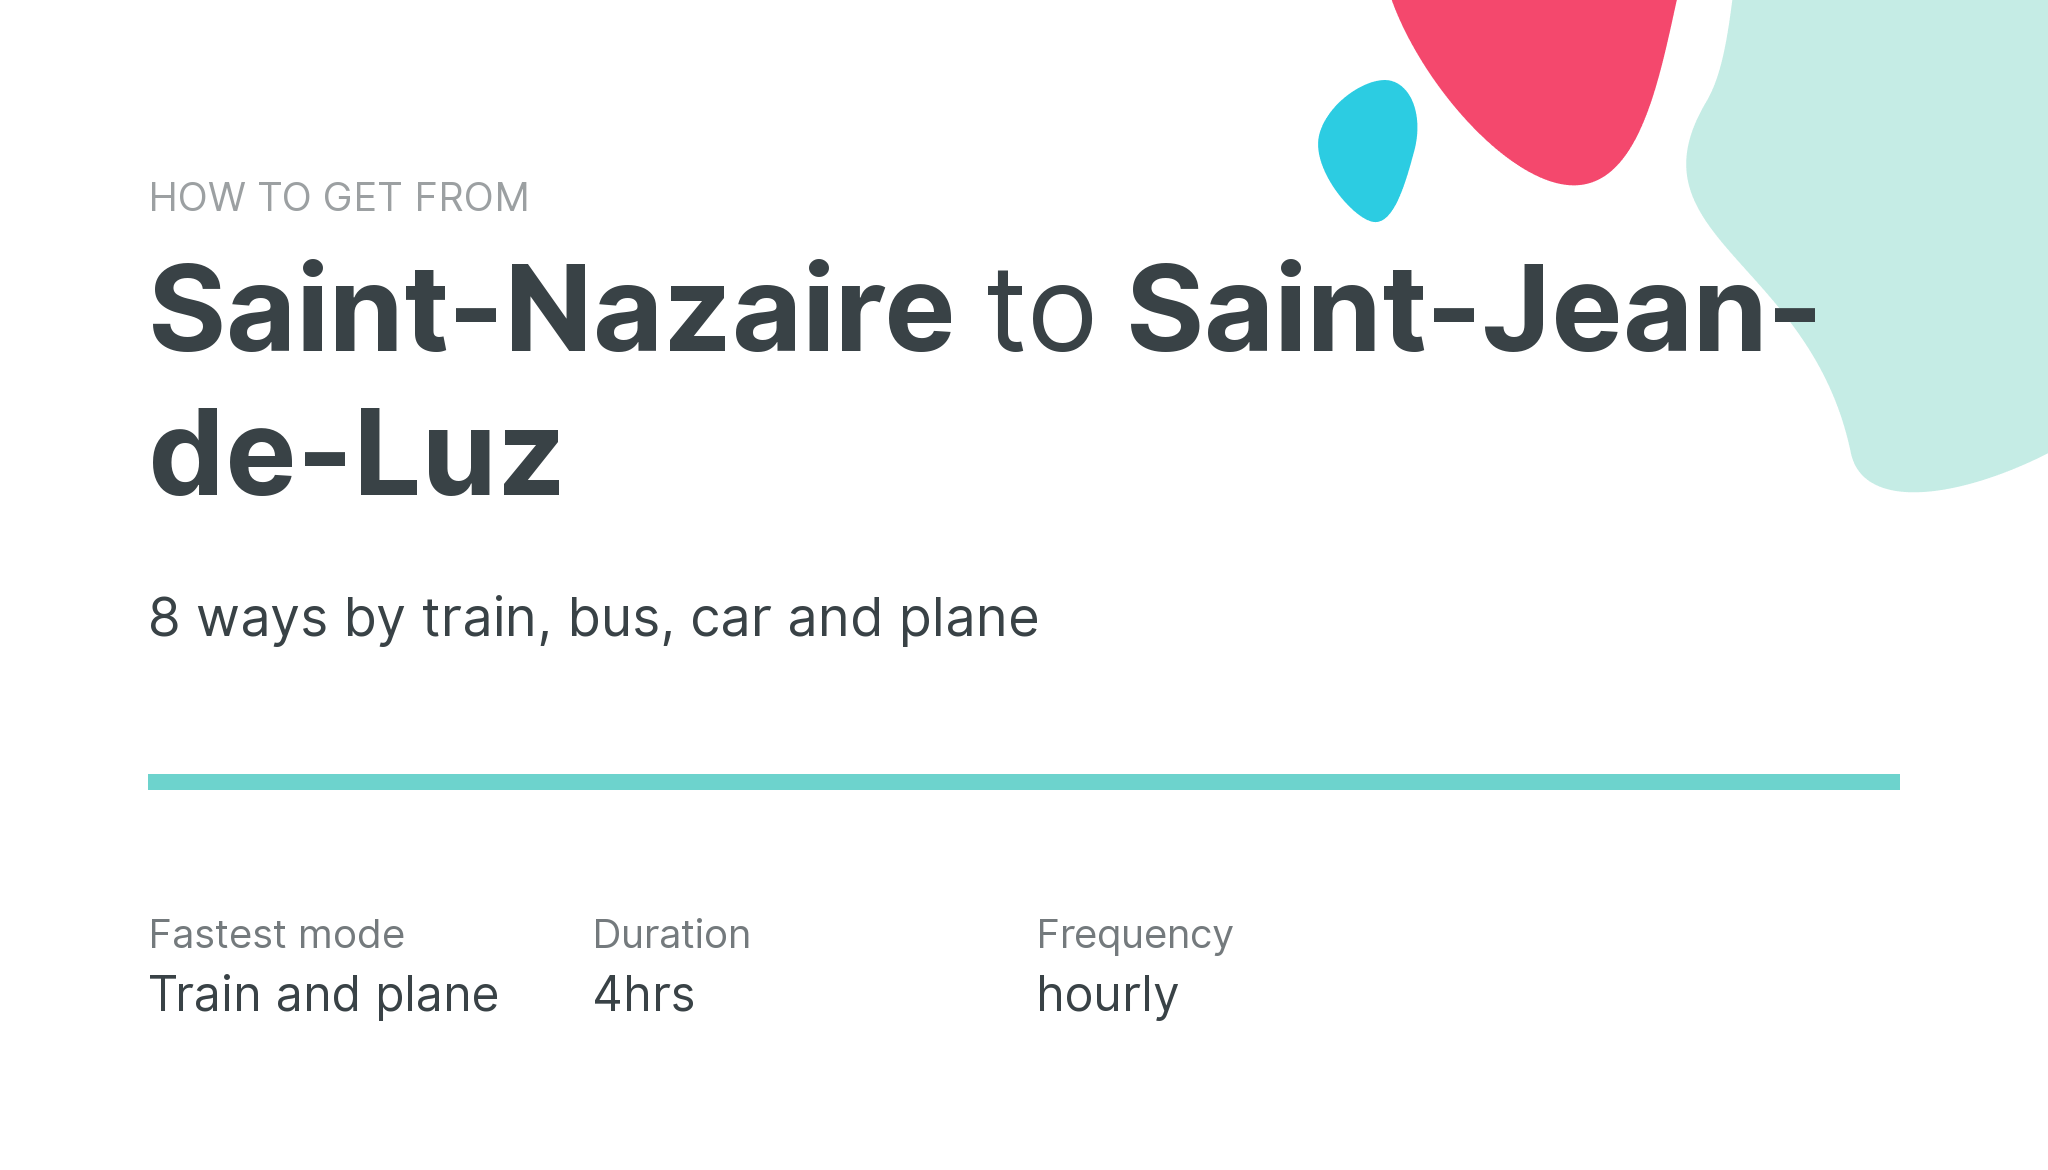 How do I get from Saint-Nazaire to Saint-Jean-de-Luz